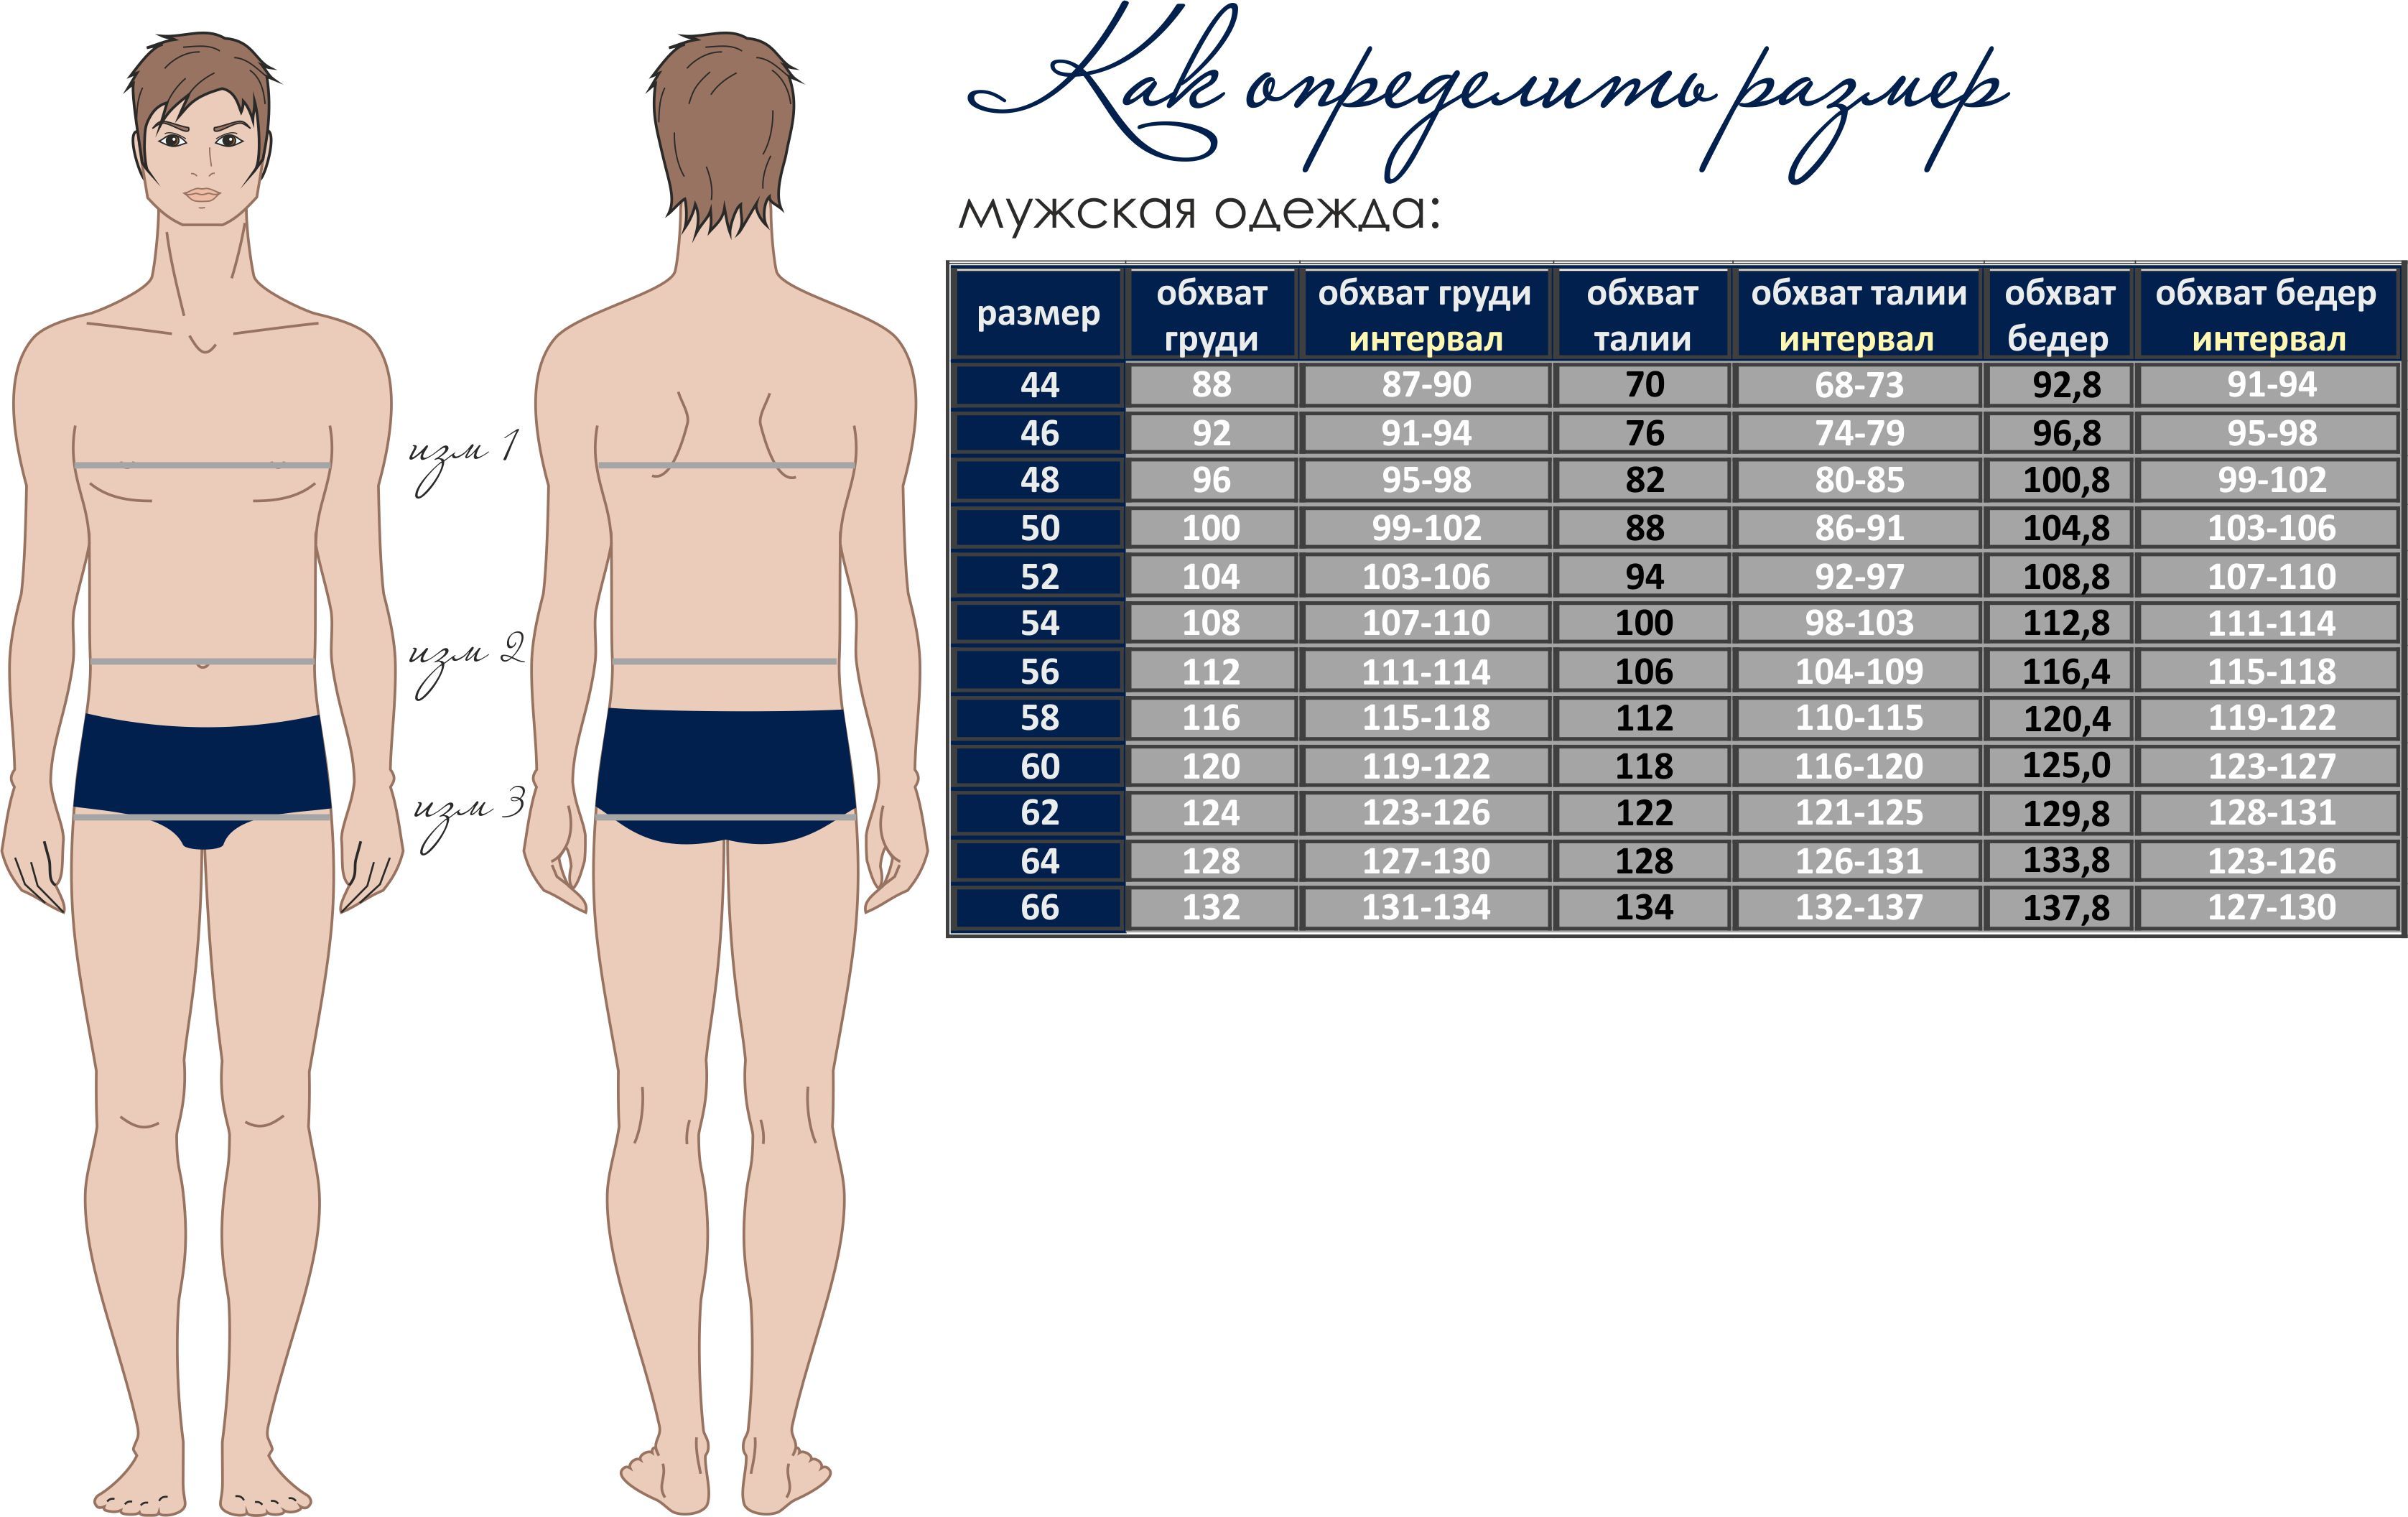 параметры груди у мужчин (118) фото